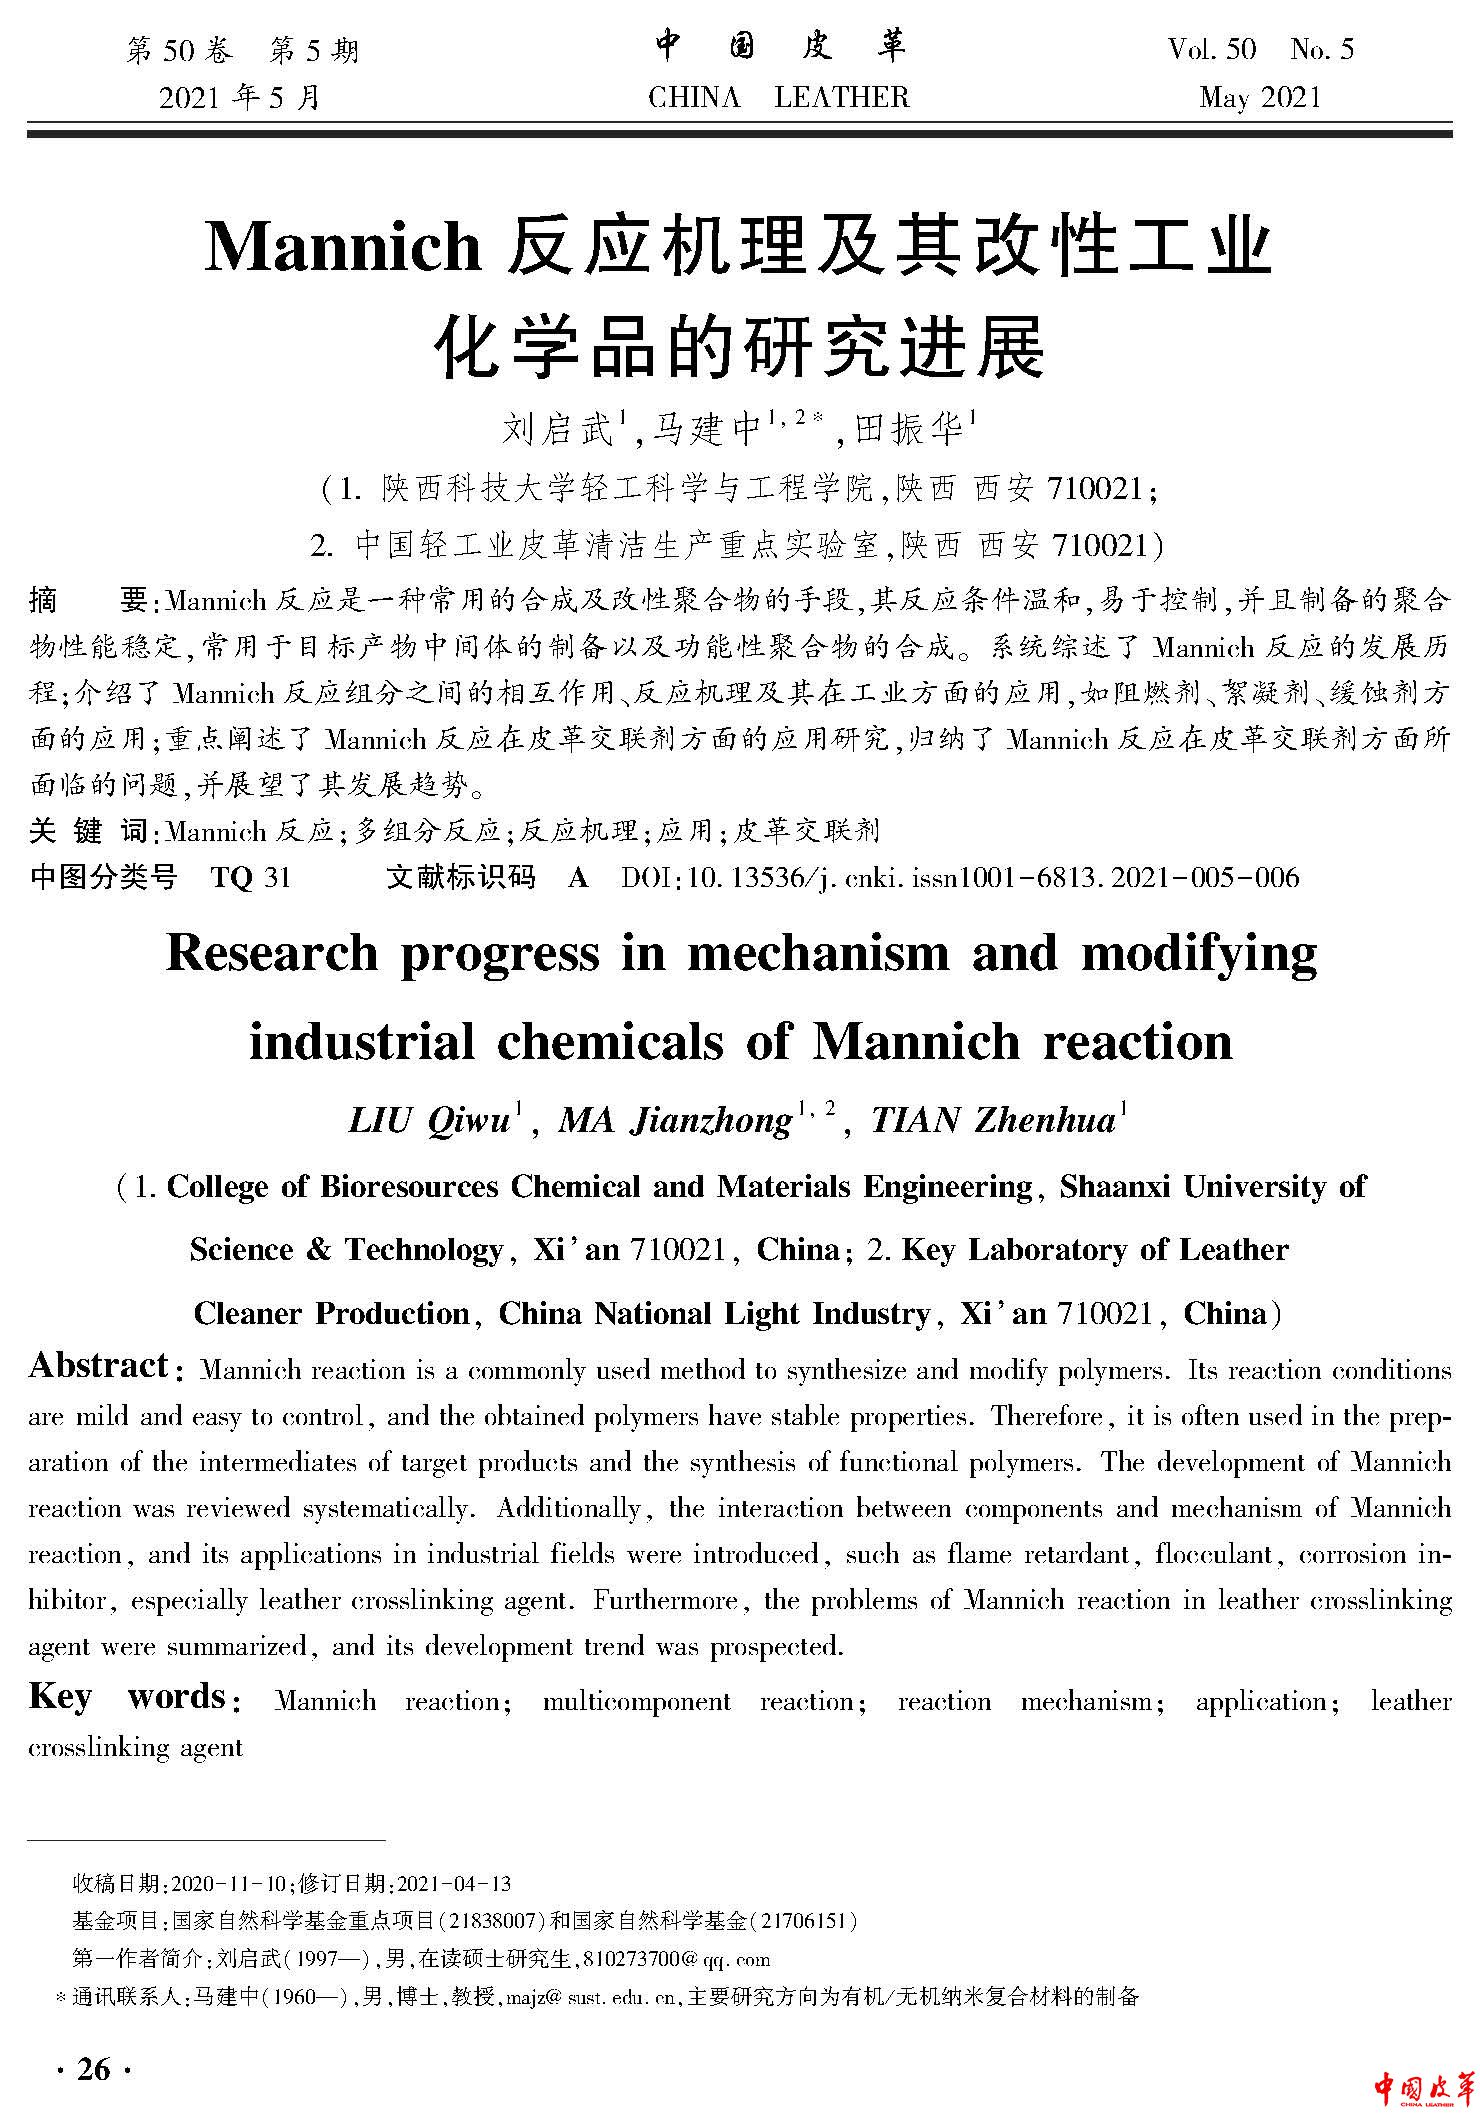 页面提取自－06 Mannich 反应机理及其改性工业化学品的研究进展.jpg